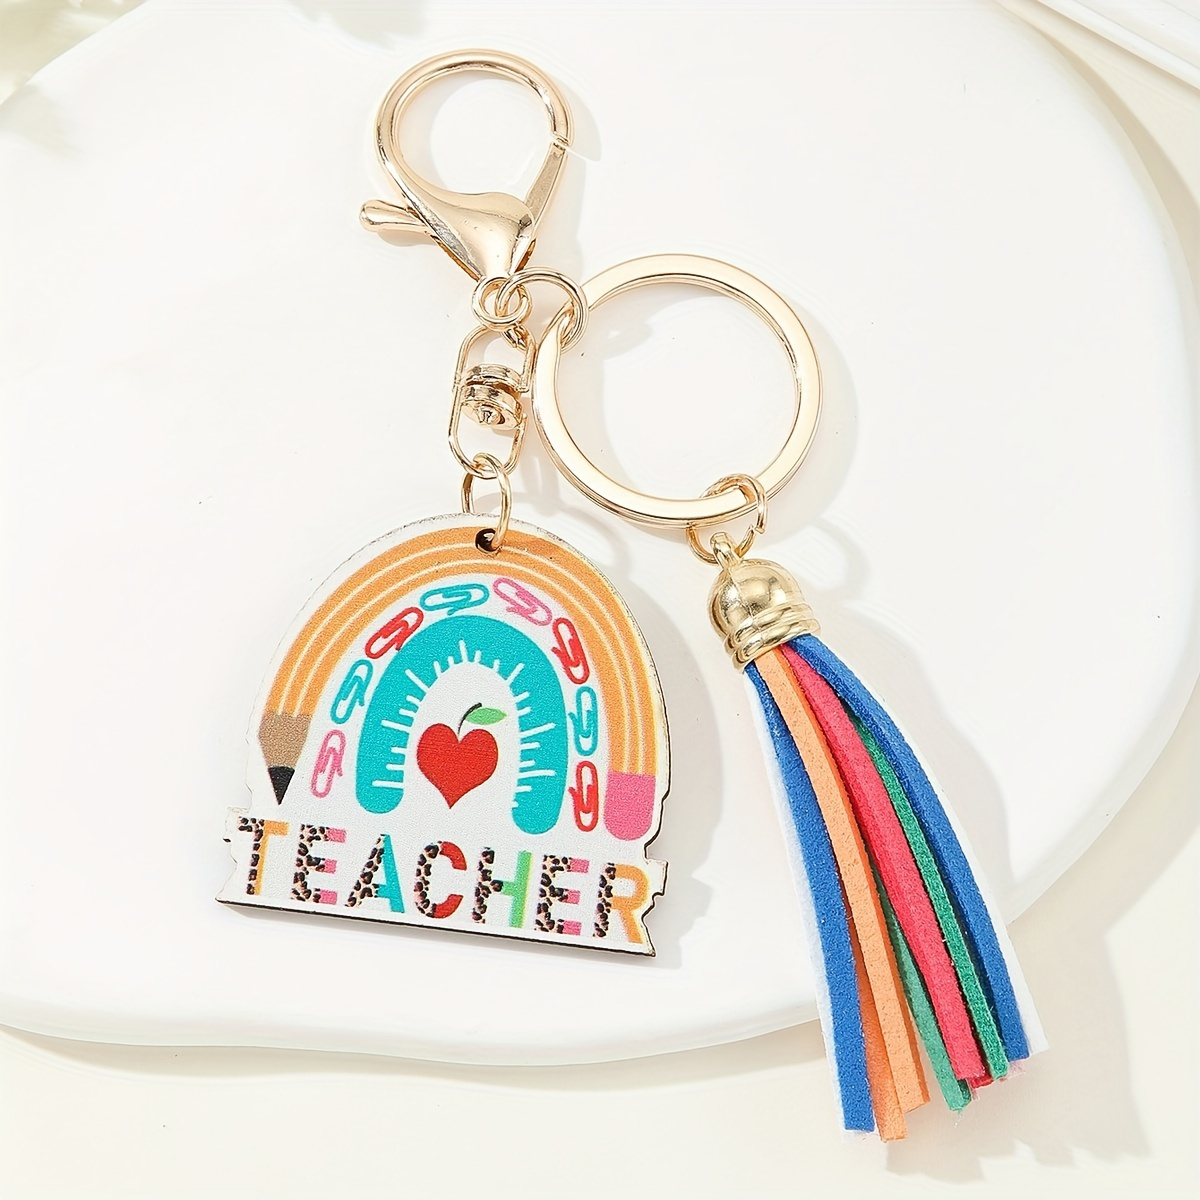 

Teacher Rainbow Tag Keychain Cute Colorful Key Chain Ring Bag Backpack Charm Car Pendant Teacher's Day Graduation Gift For Teachers